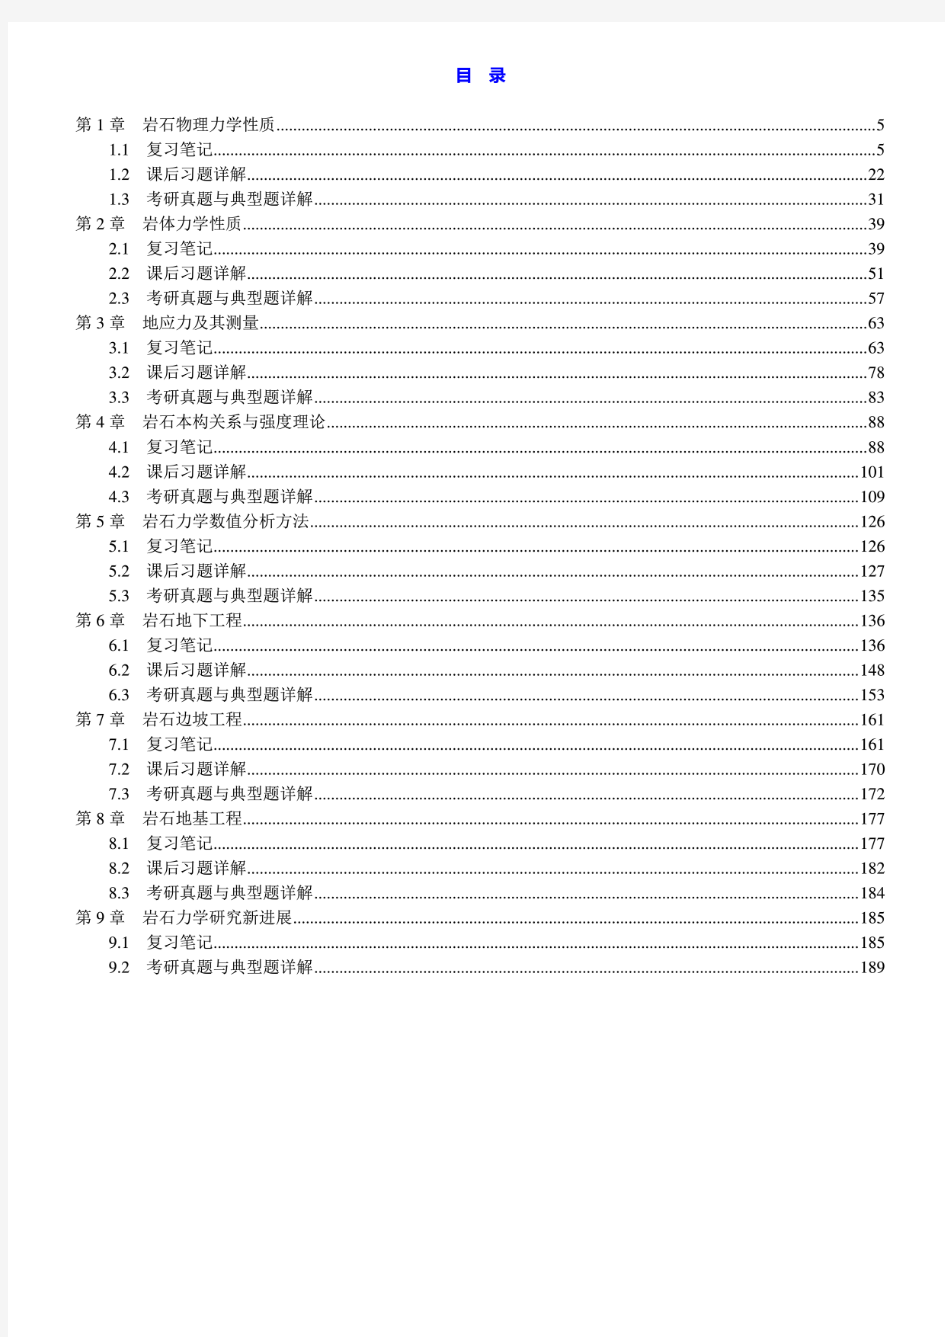 蔡美峰 岩石力学与工程 第2版 笔记和课后习题含考研真题详解答案(上册)